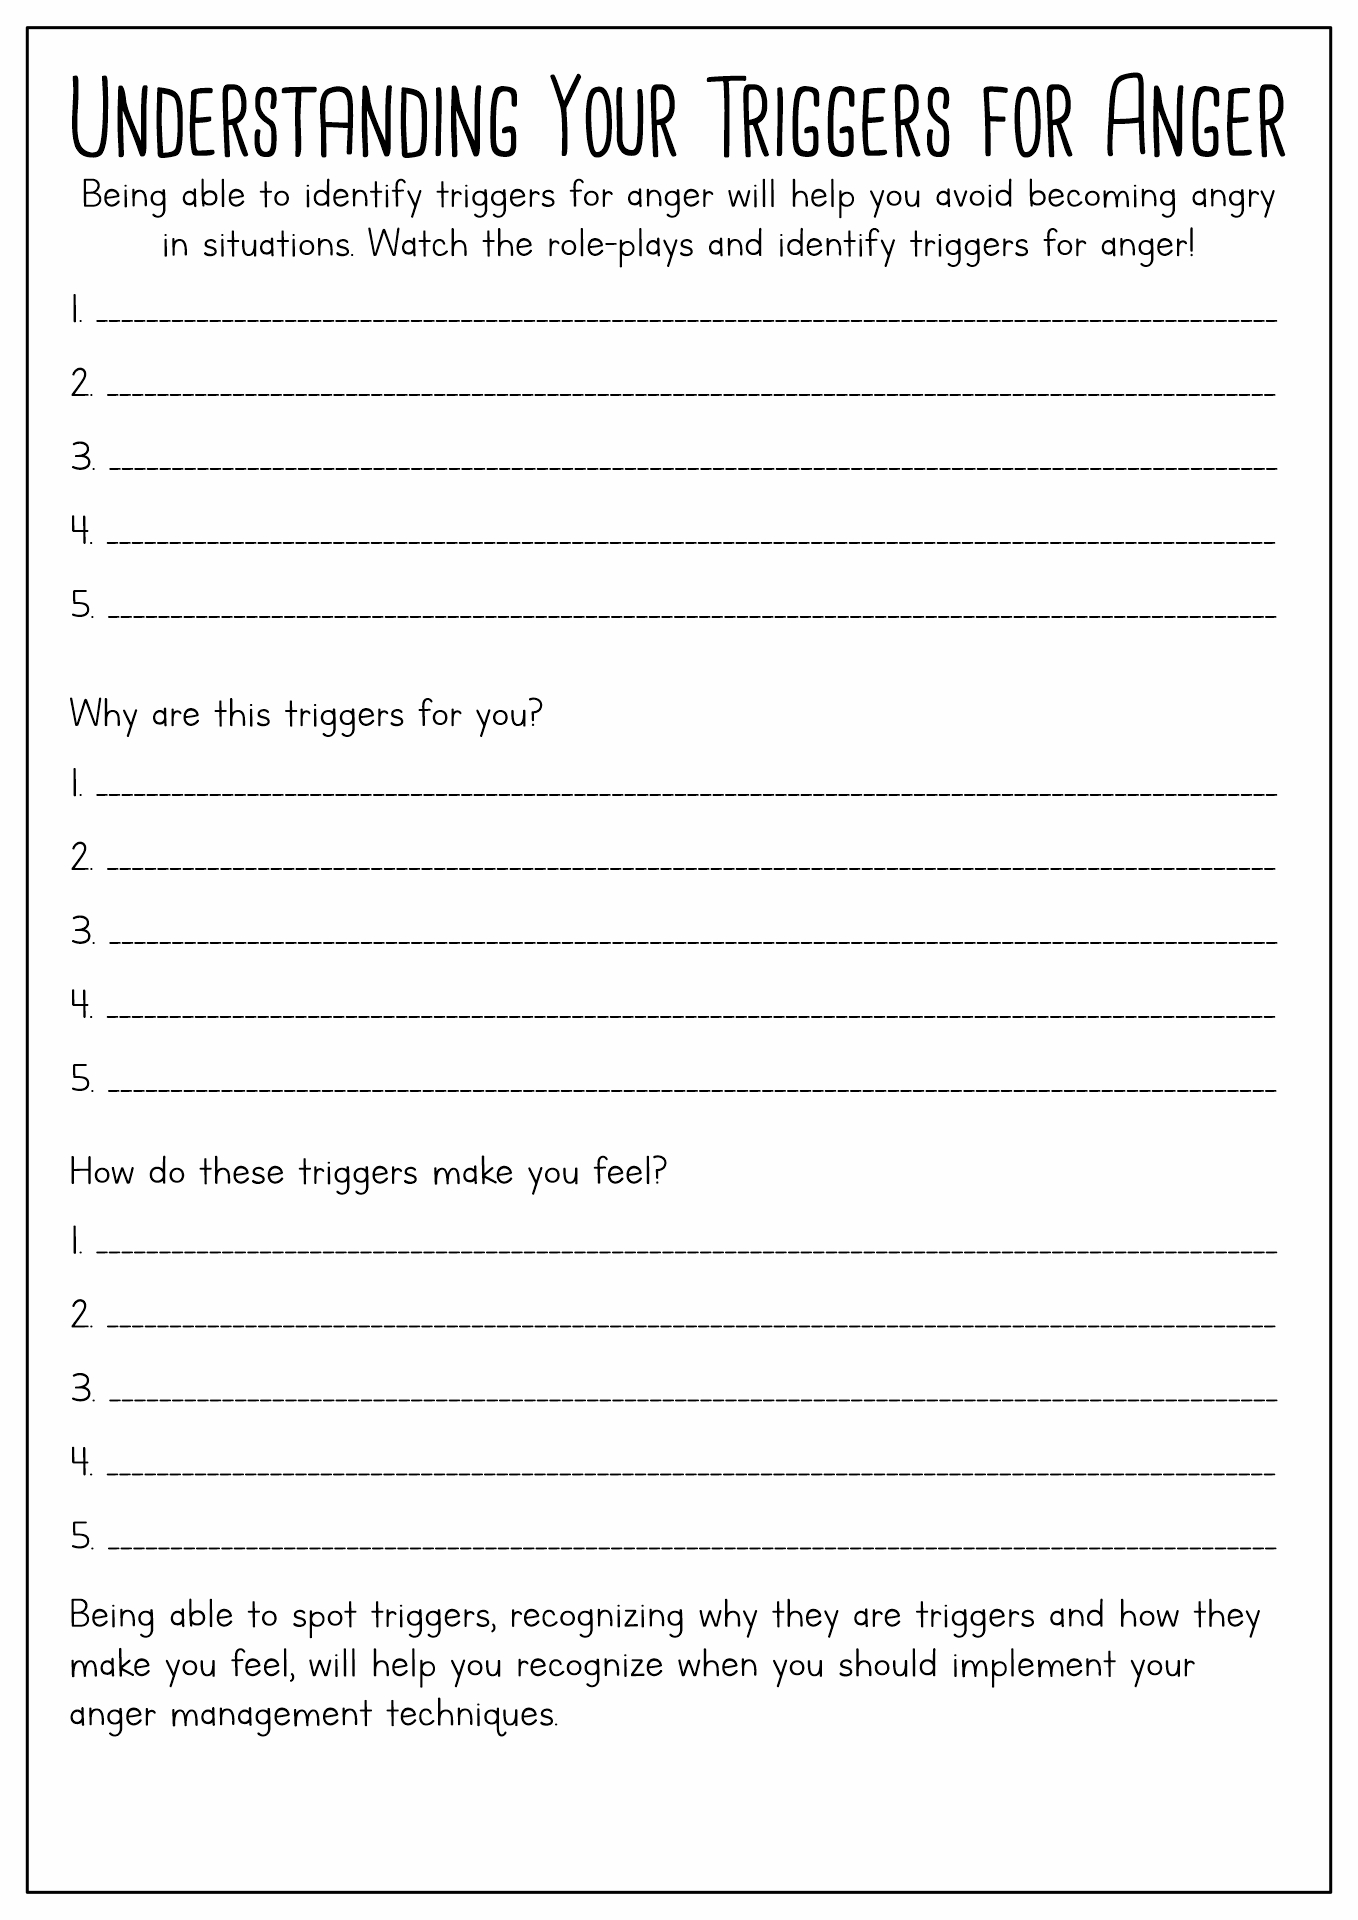 Anger Management Skills Worksheet Image